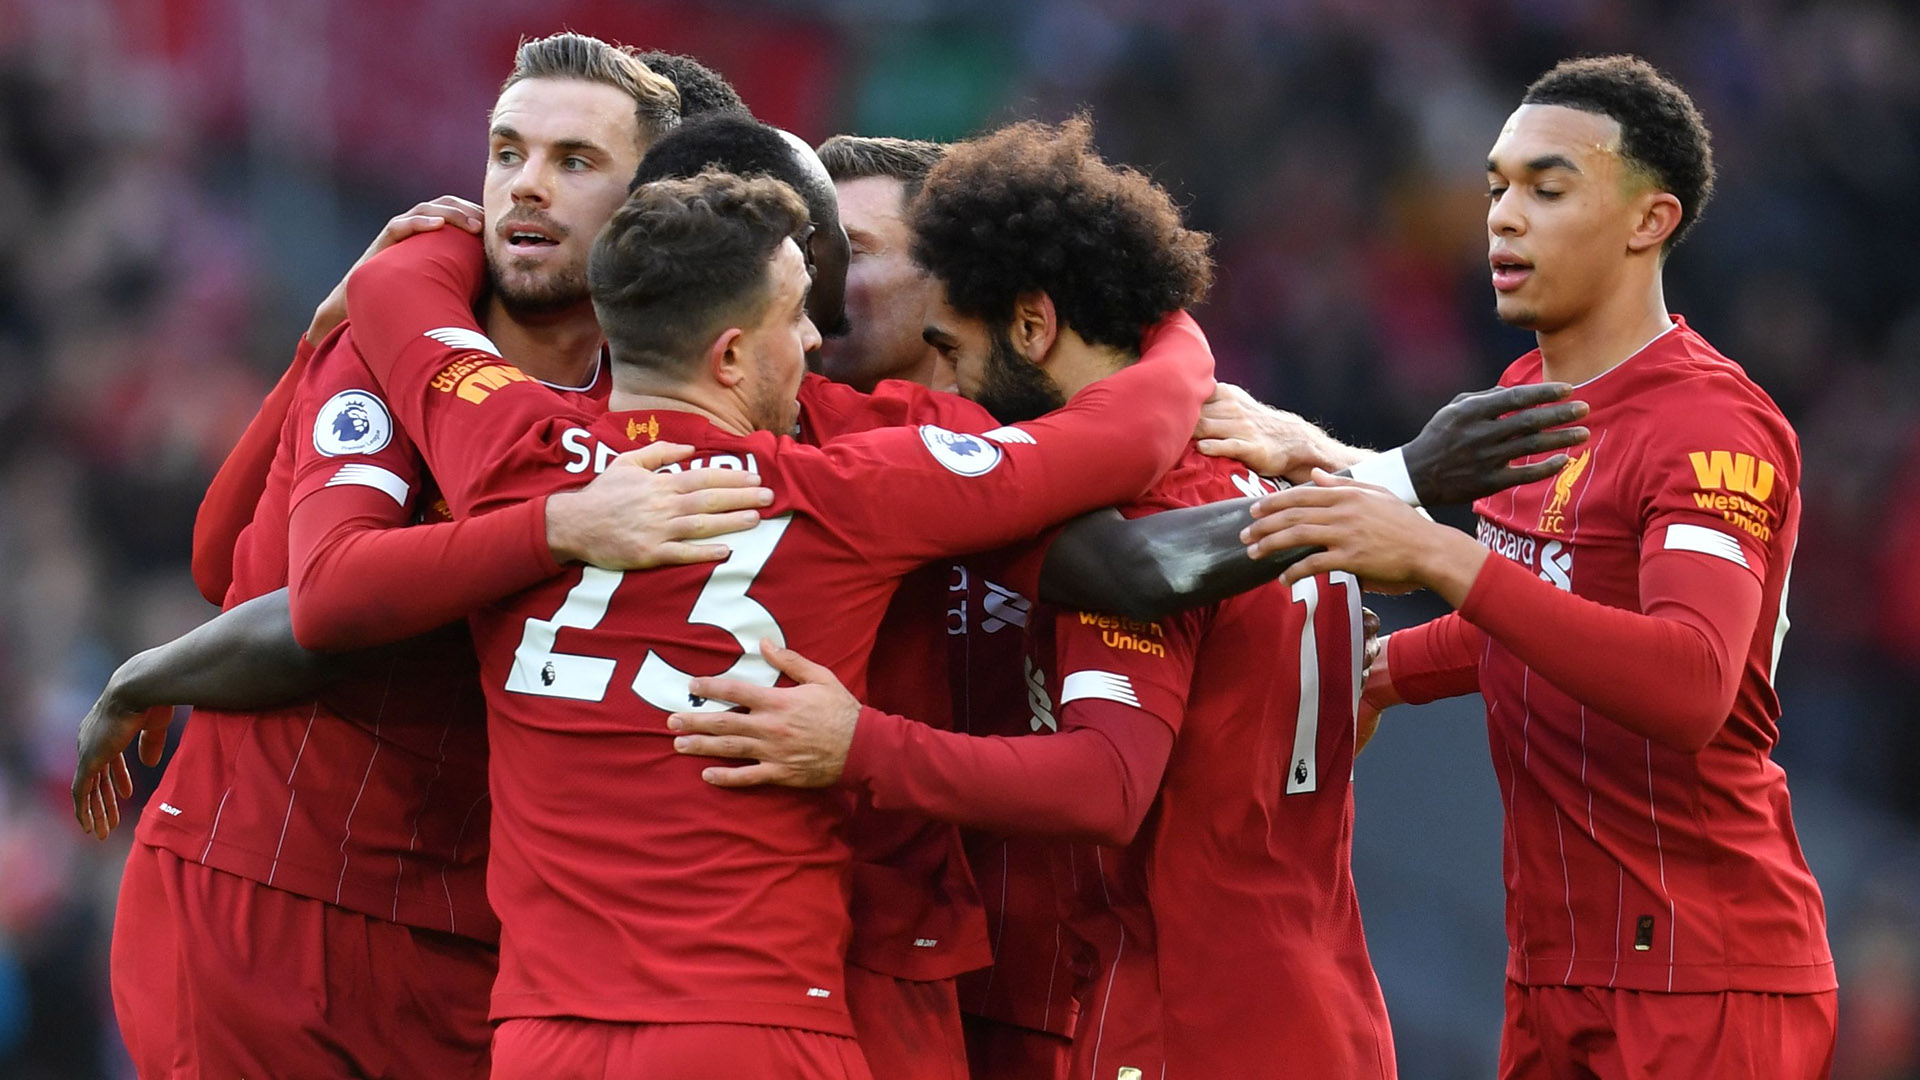 Liverpool-Watford (2-0) - Sans séduire, les Reds continuent d'engranger